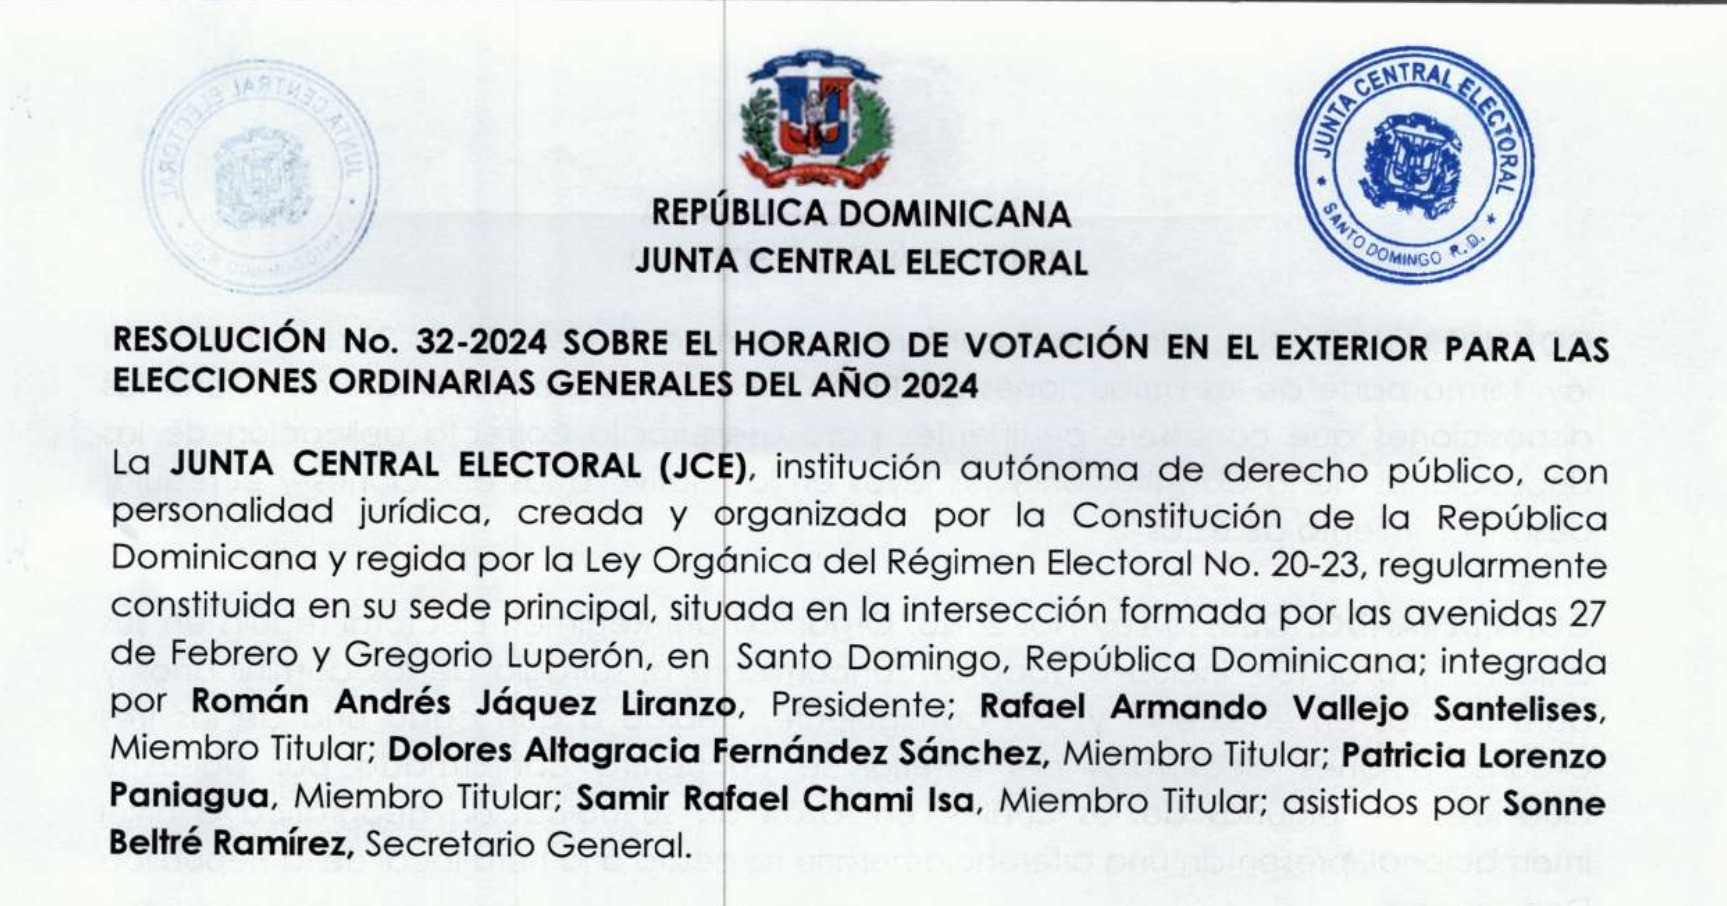 Resolución no.32-2024 sobre el horario de votación en el exterior para las elecciones ordinarias generales del año 2024.